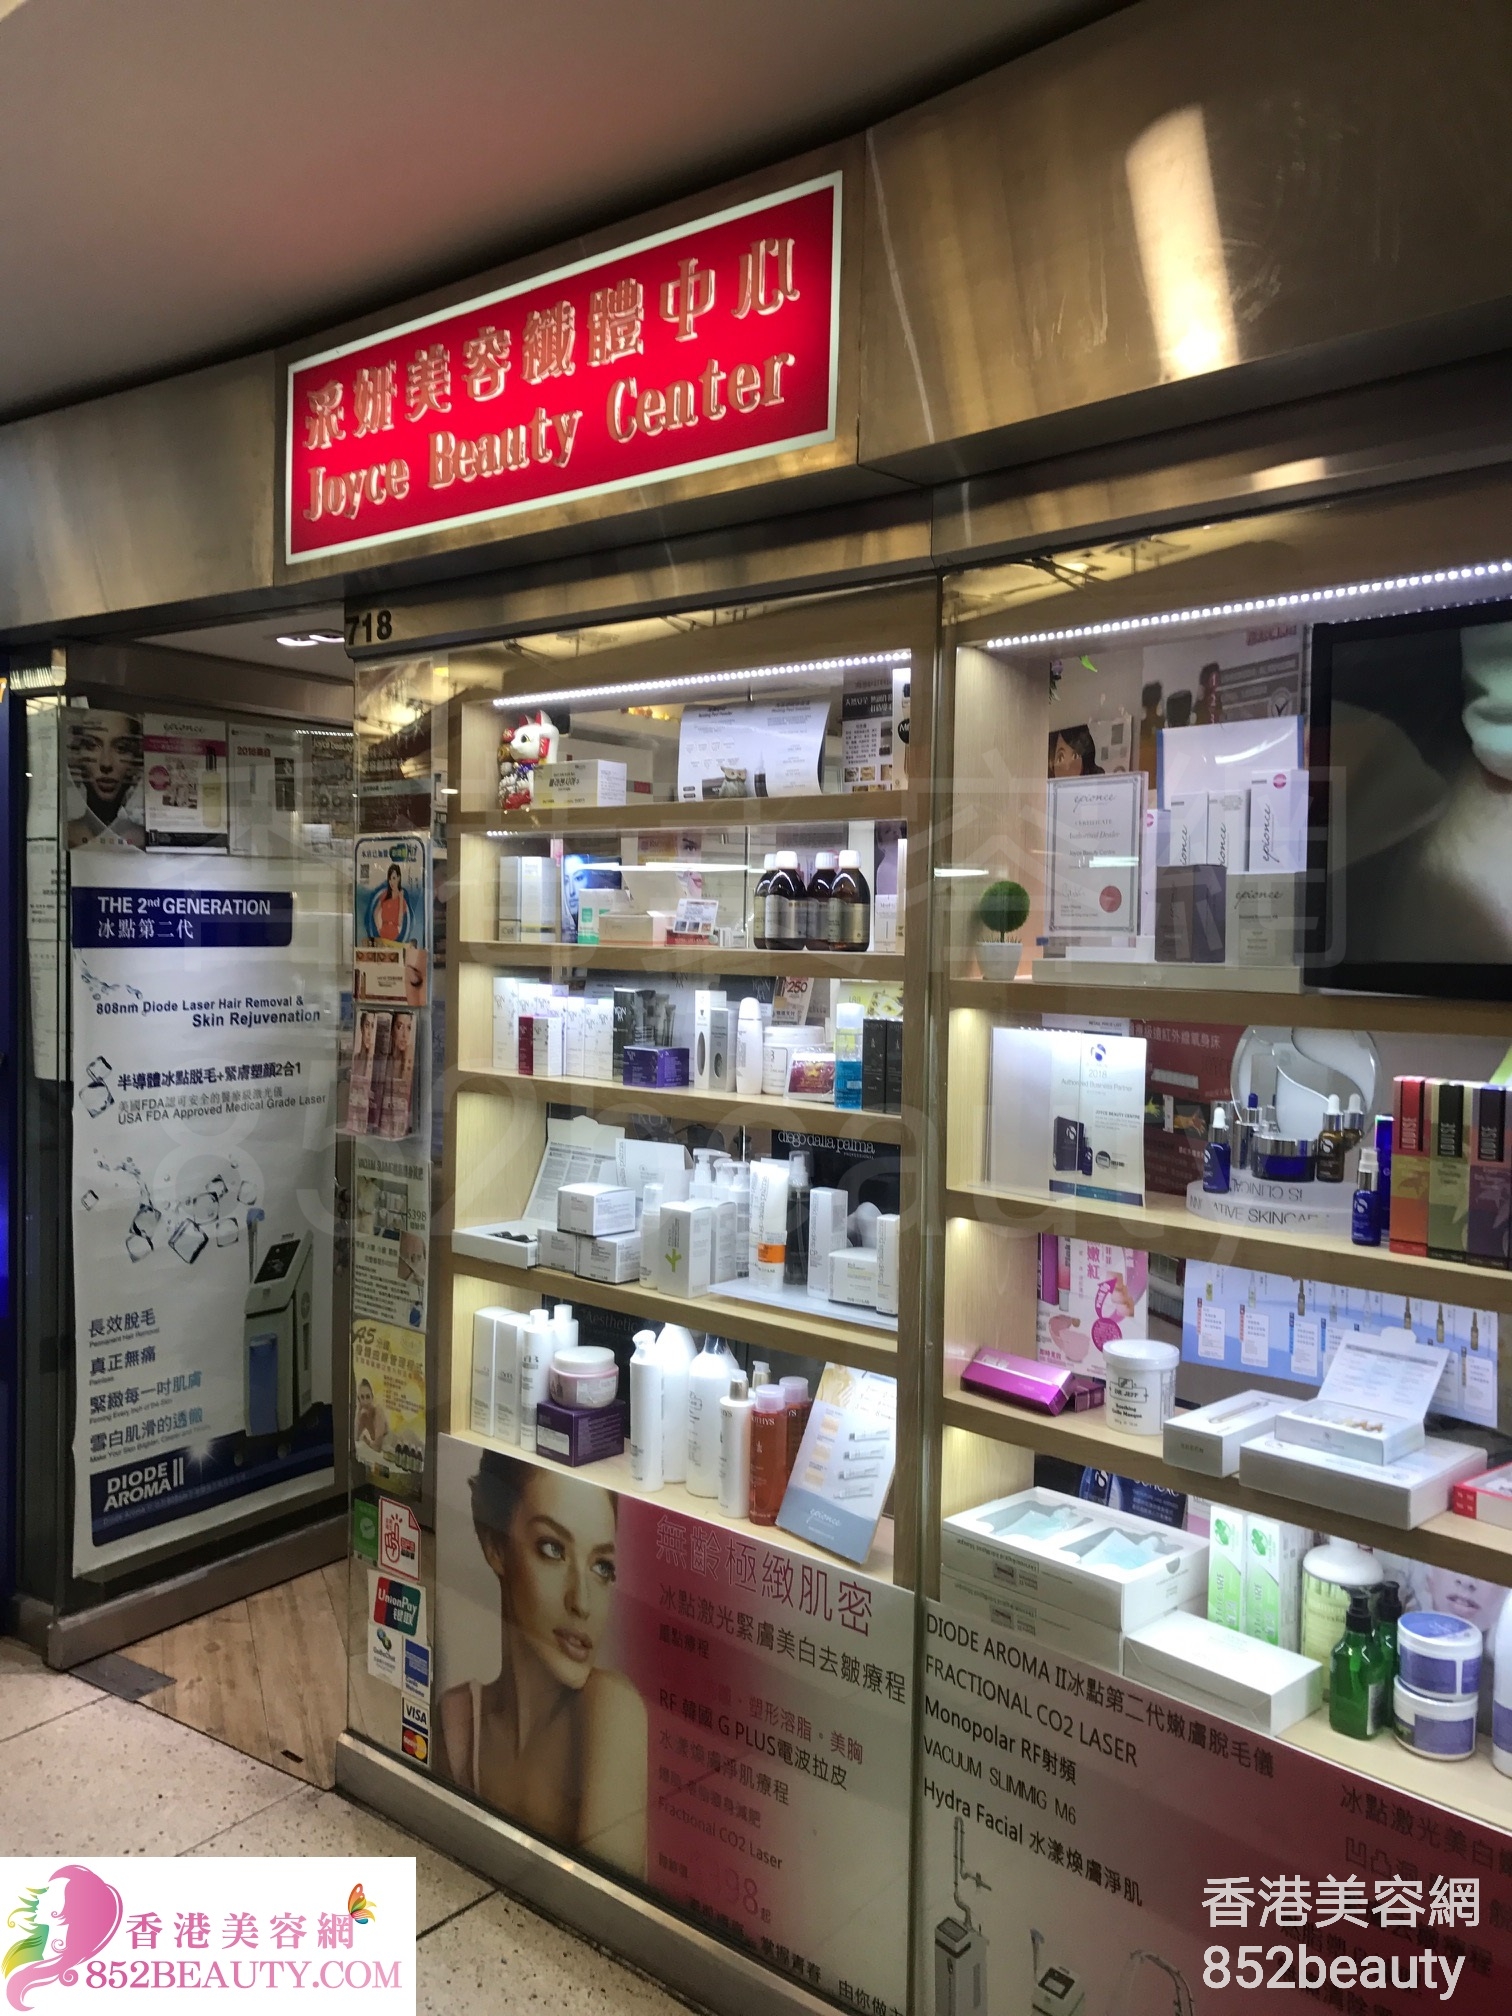 Facial Care: 采妍美容纖體中心 Joyce Beauty Center (西九龍中心)